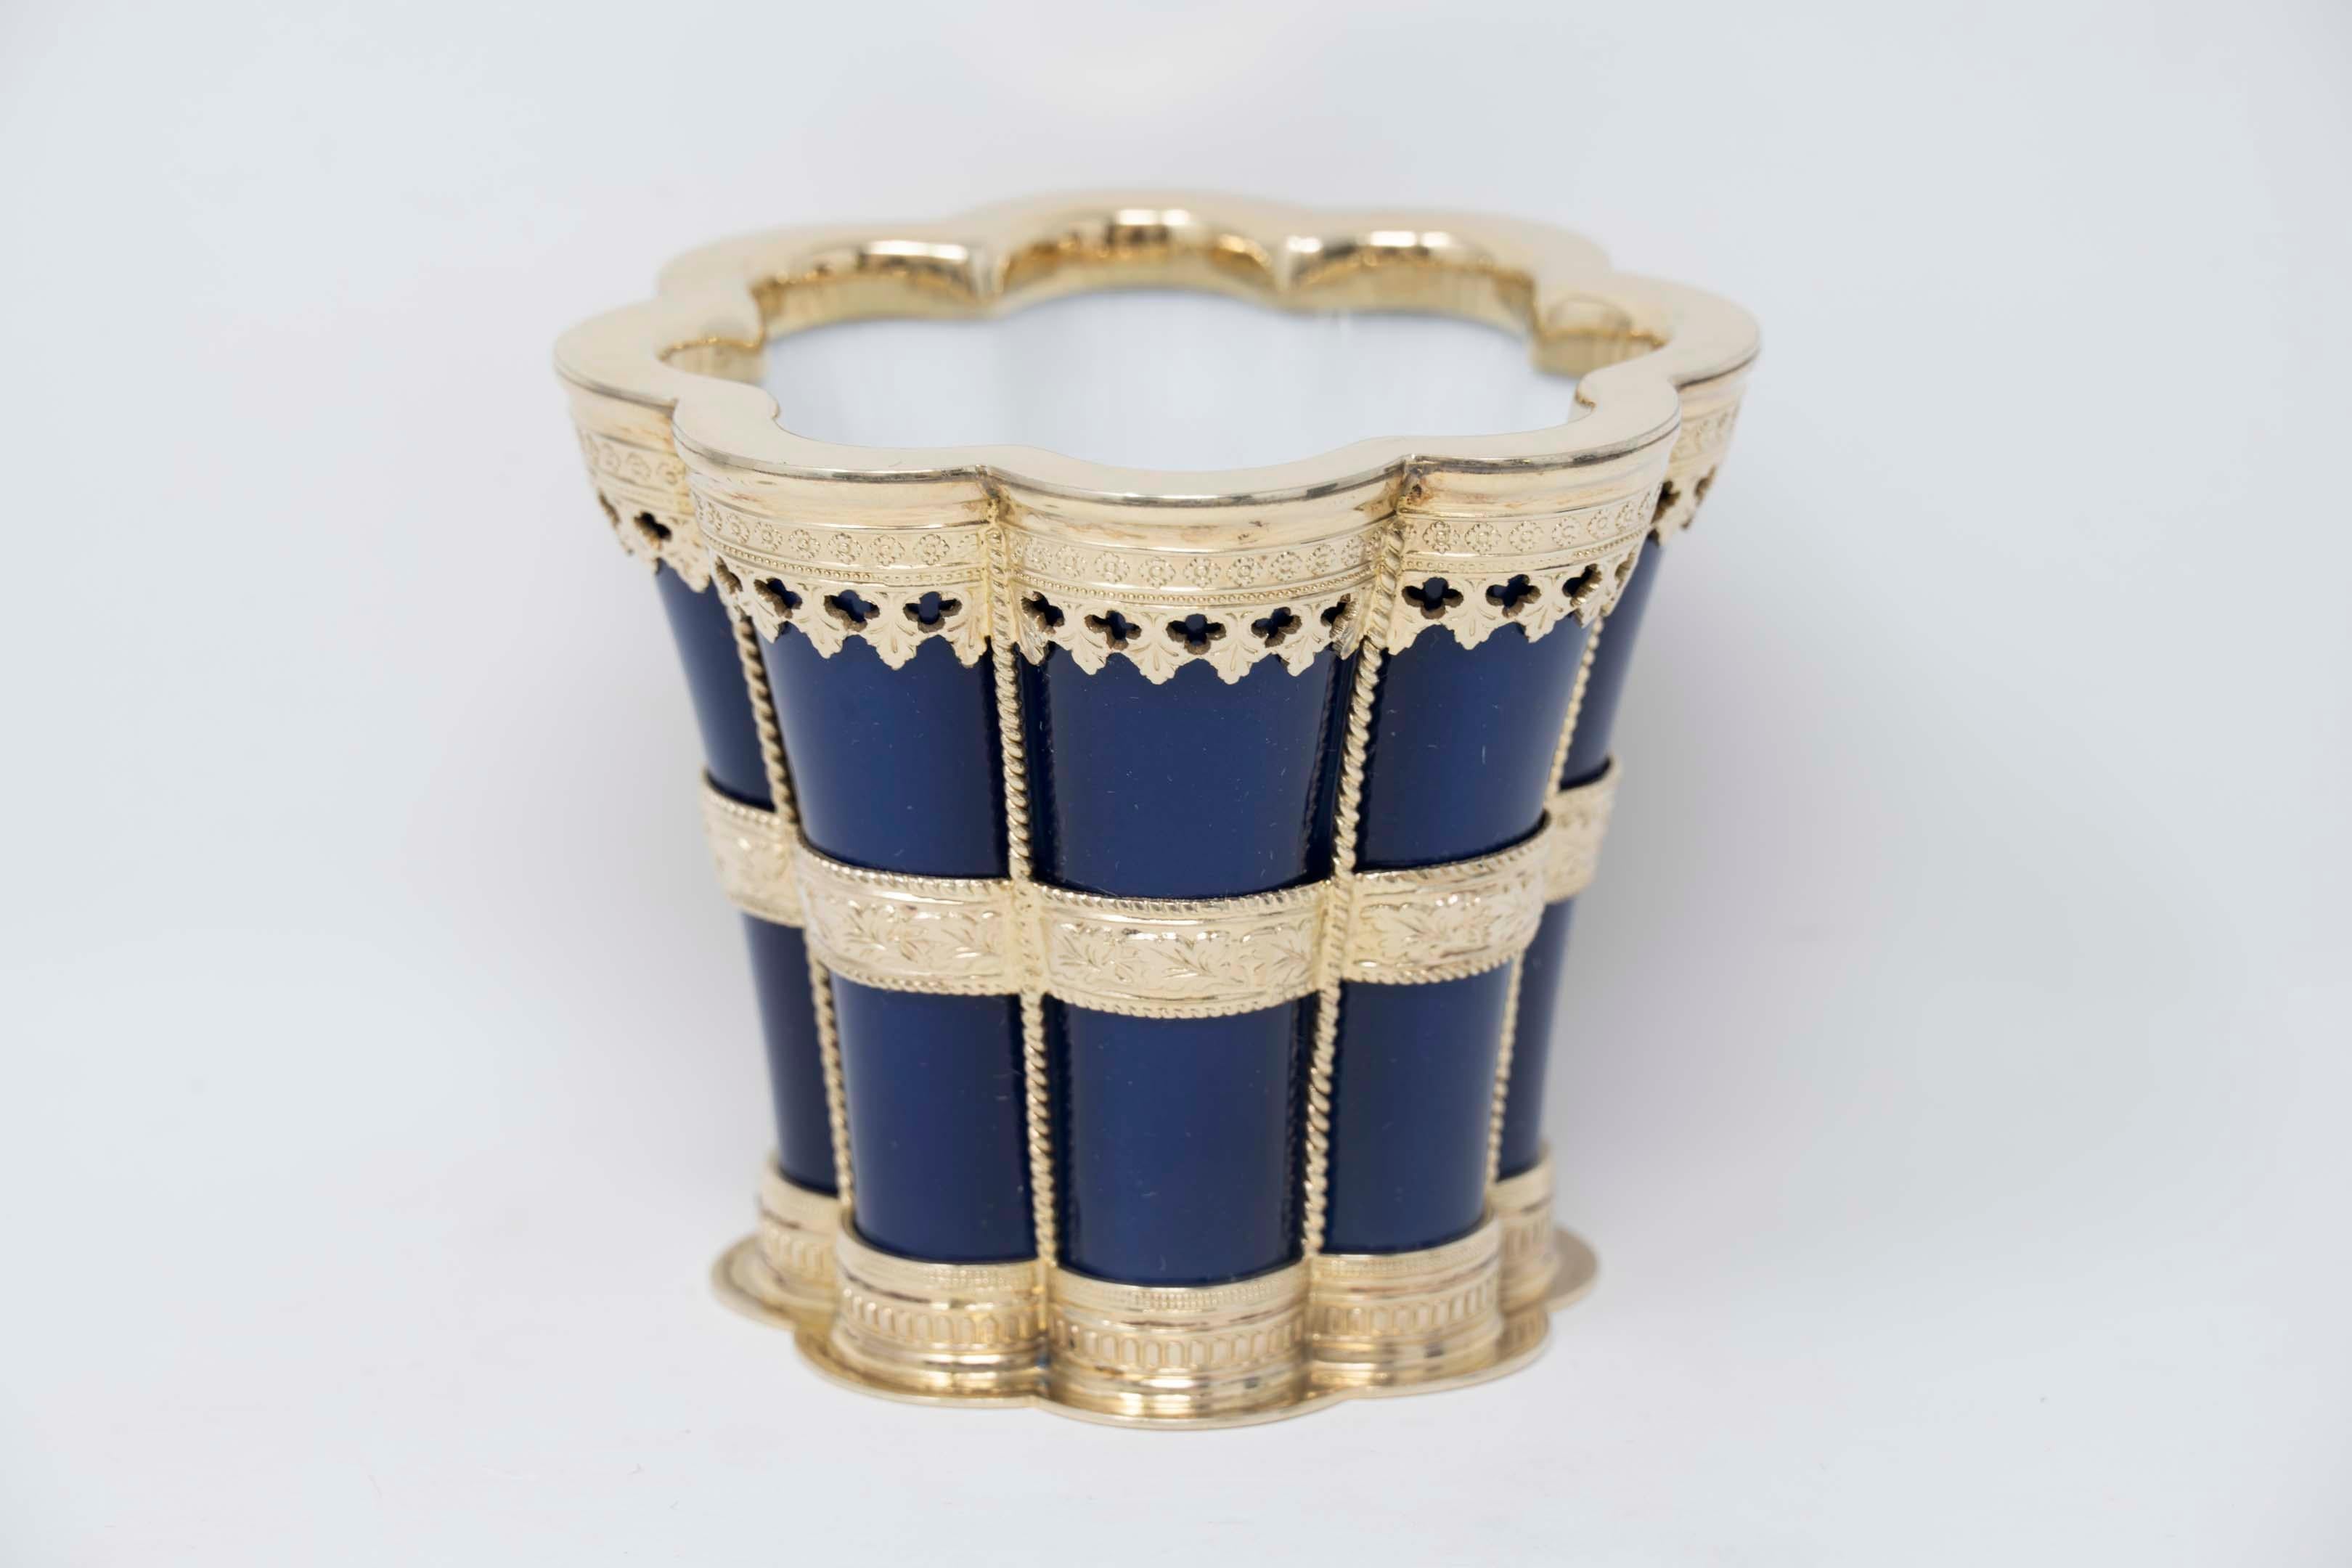 Coupe Margrethe Royal Copenhagen en porcelaine bleue et monture dorée en argent sterling, réalisée par l'orfèvre Anton Michelsen à Copenhague de 1893 à 2001.  Timbre Royal Copenhagen #3264 et marque d'orfèvre, vers 1950-60. La tasse mesure 7cm x 8,5